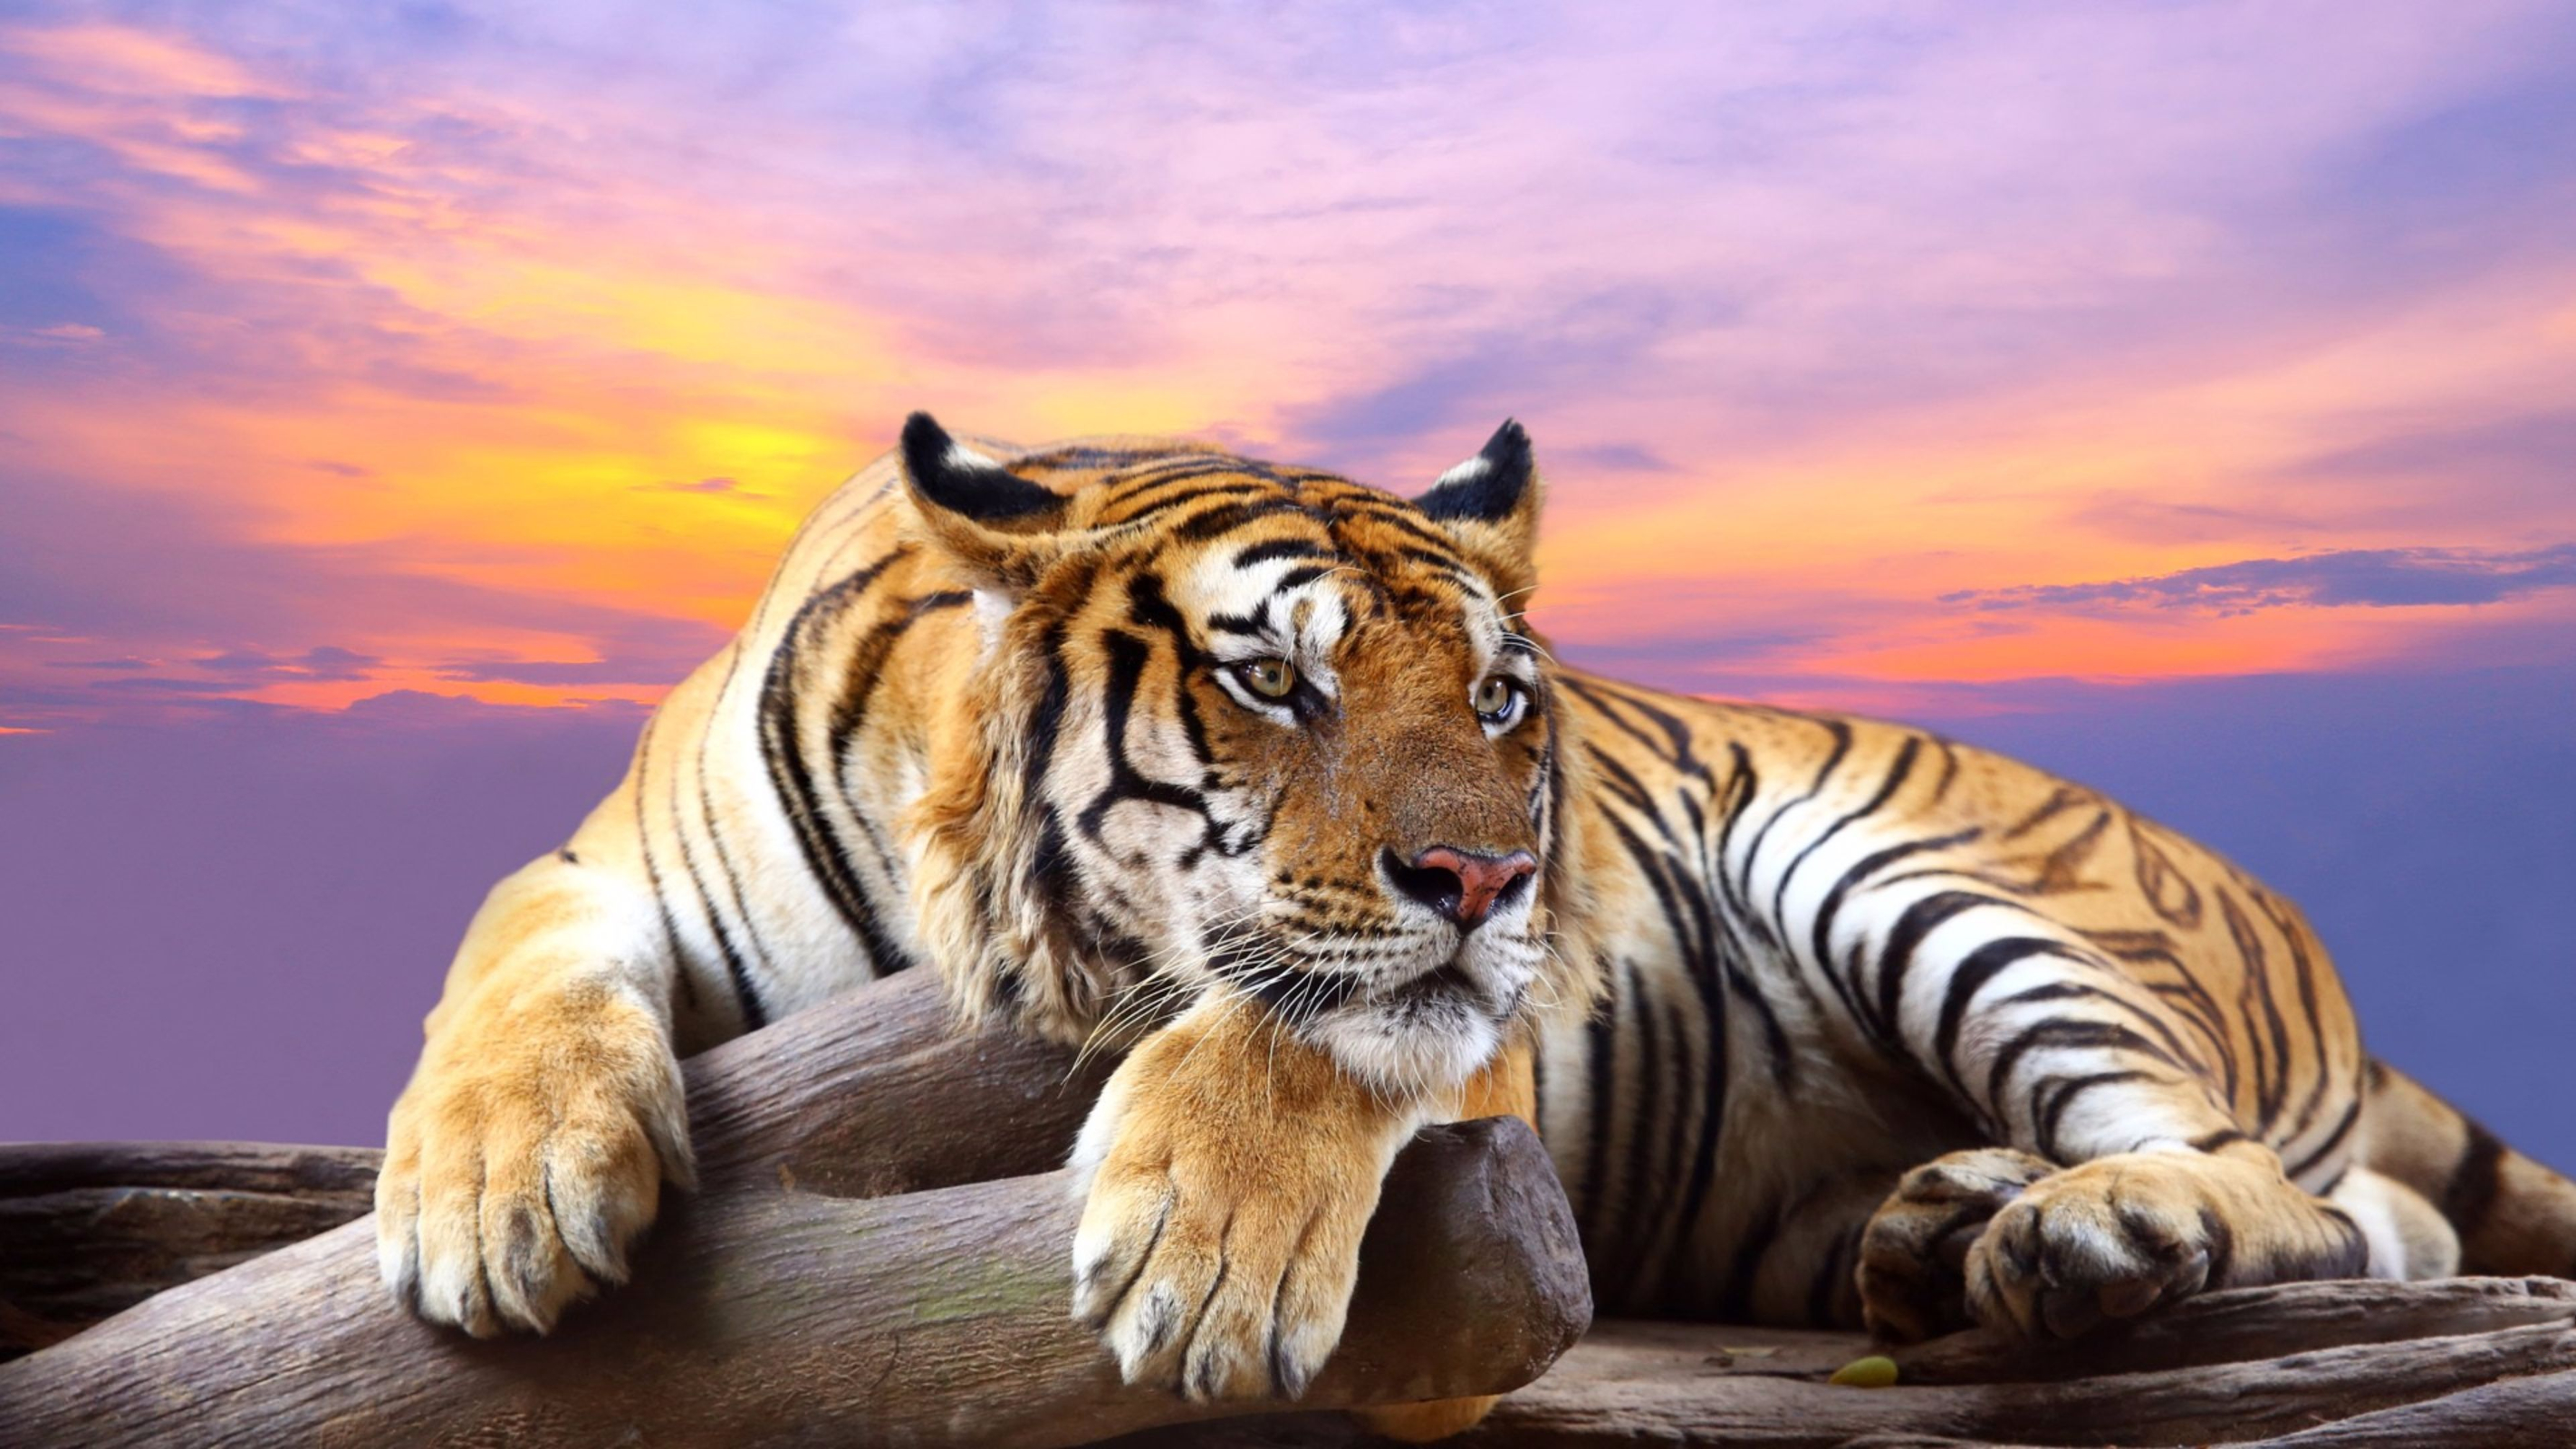 Tiger Wallpaper Hd Download - HD Wallpaper 